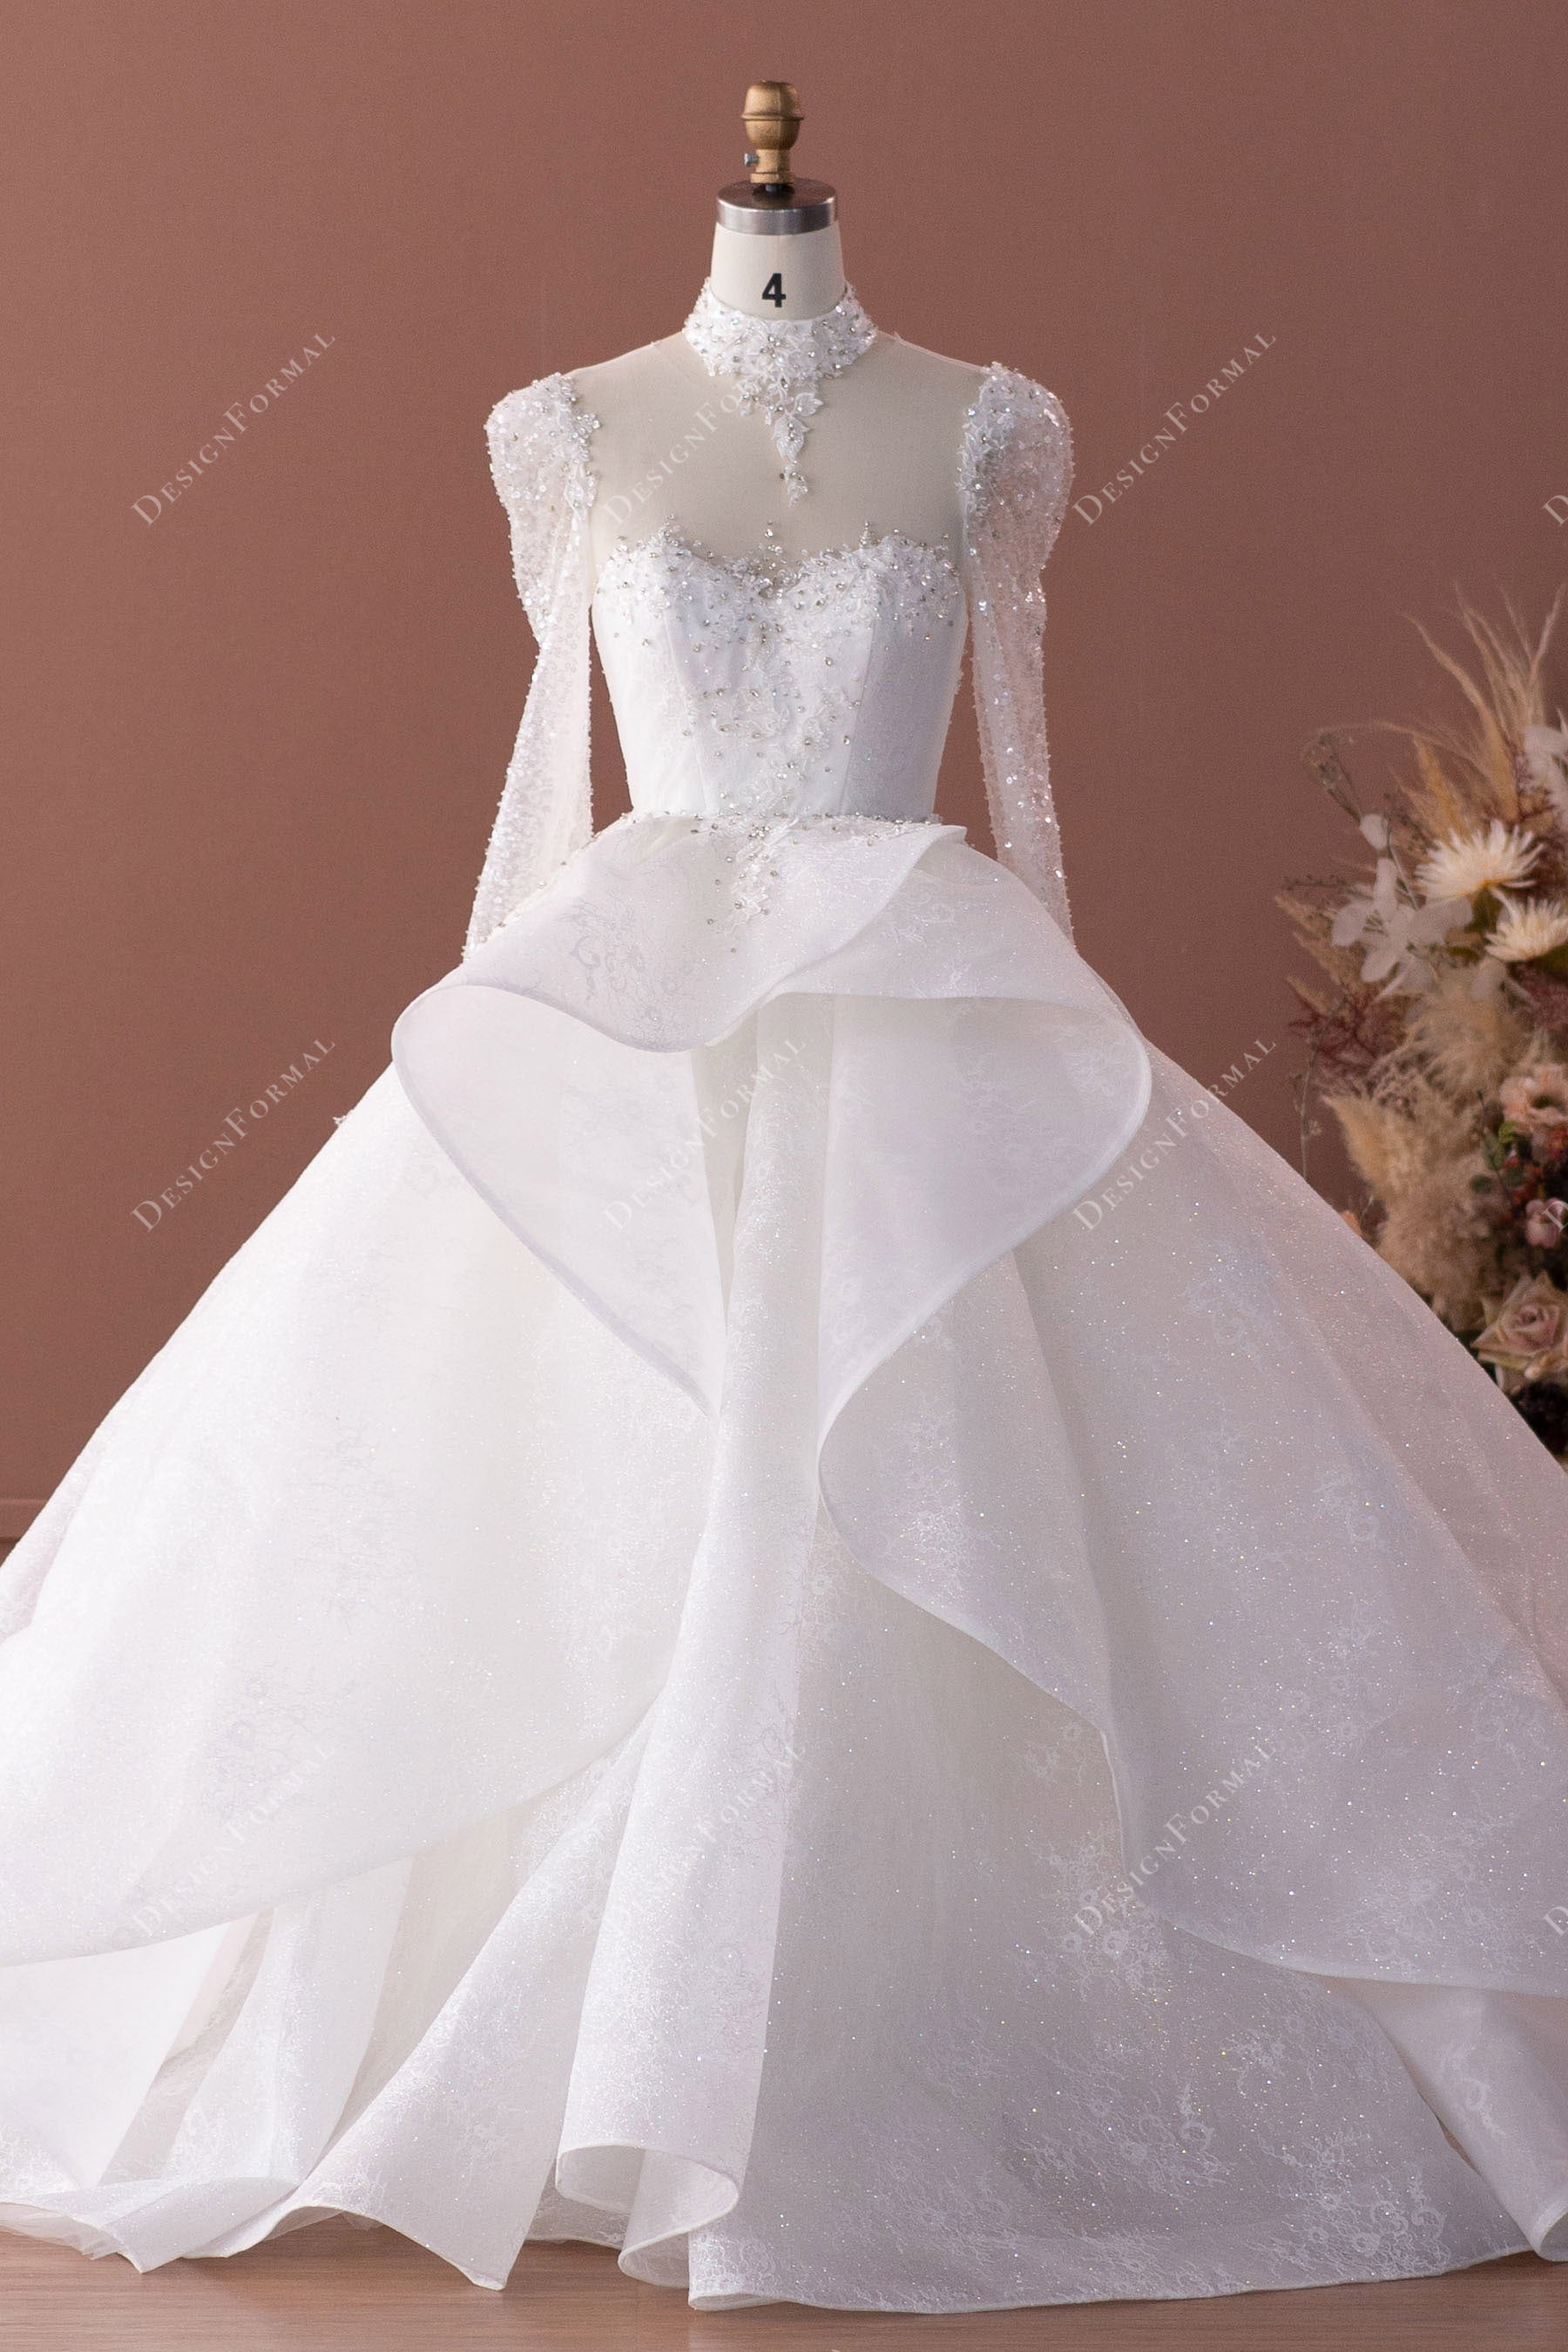 ruffled overskirt ball gown wedding dress